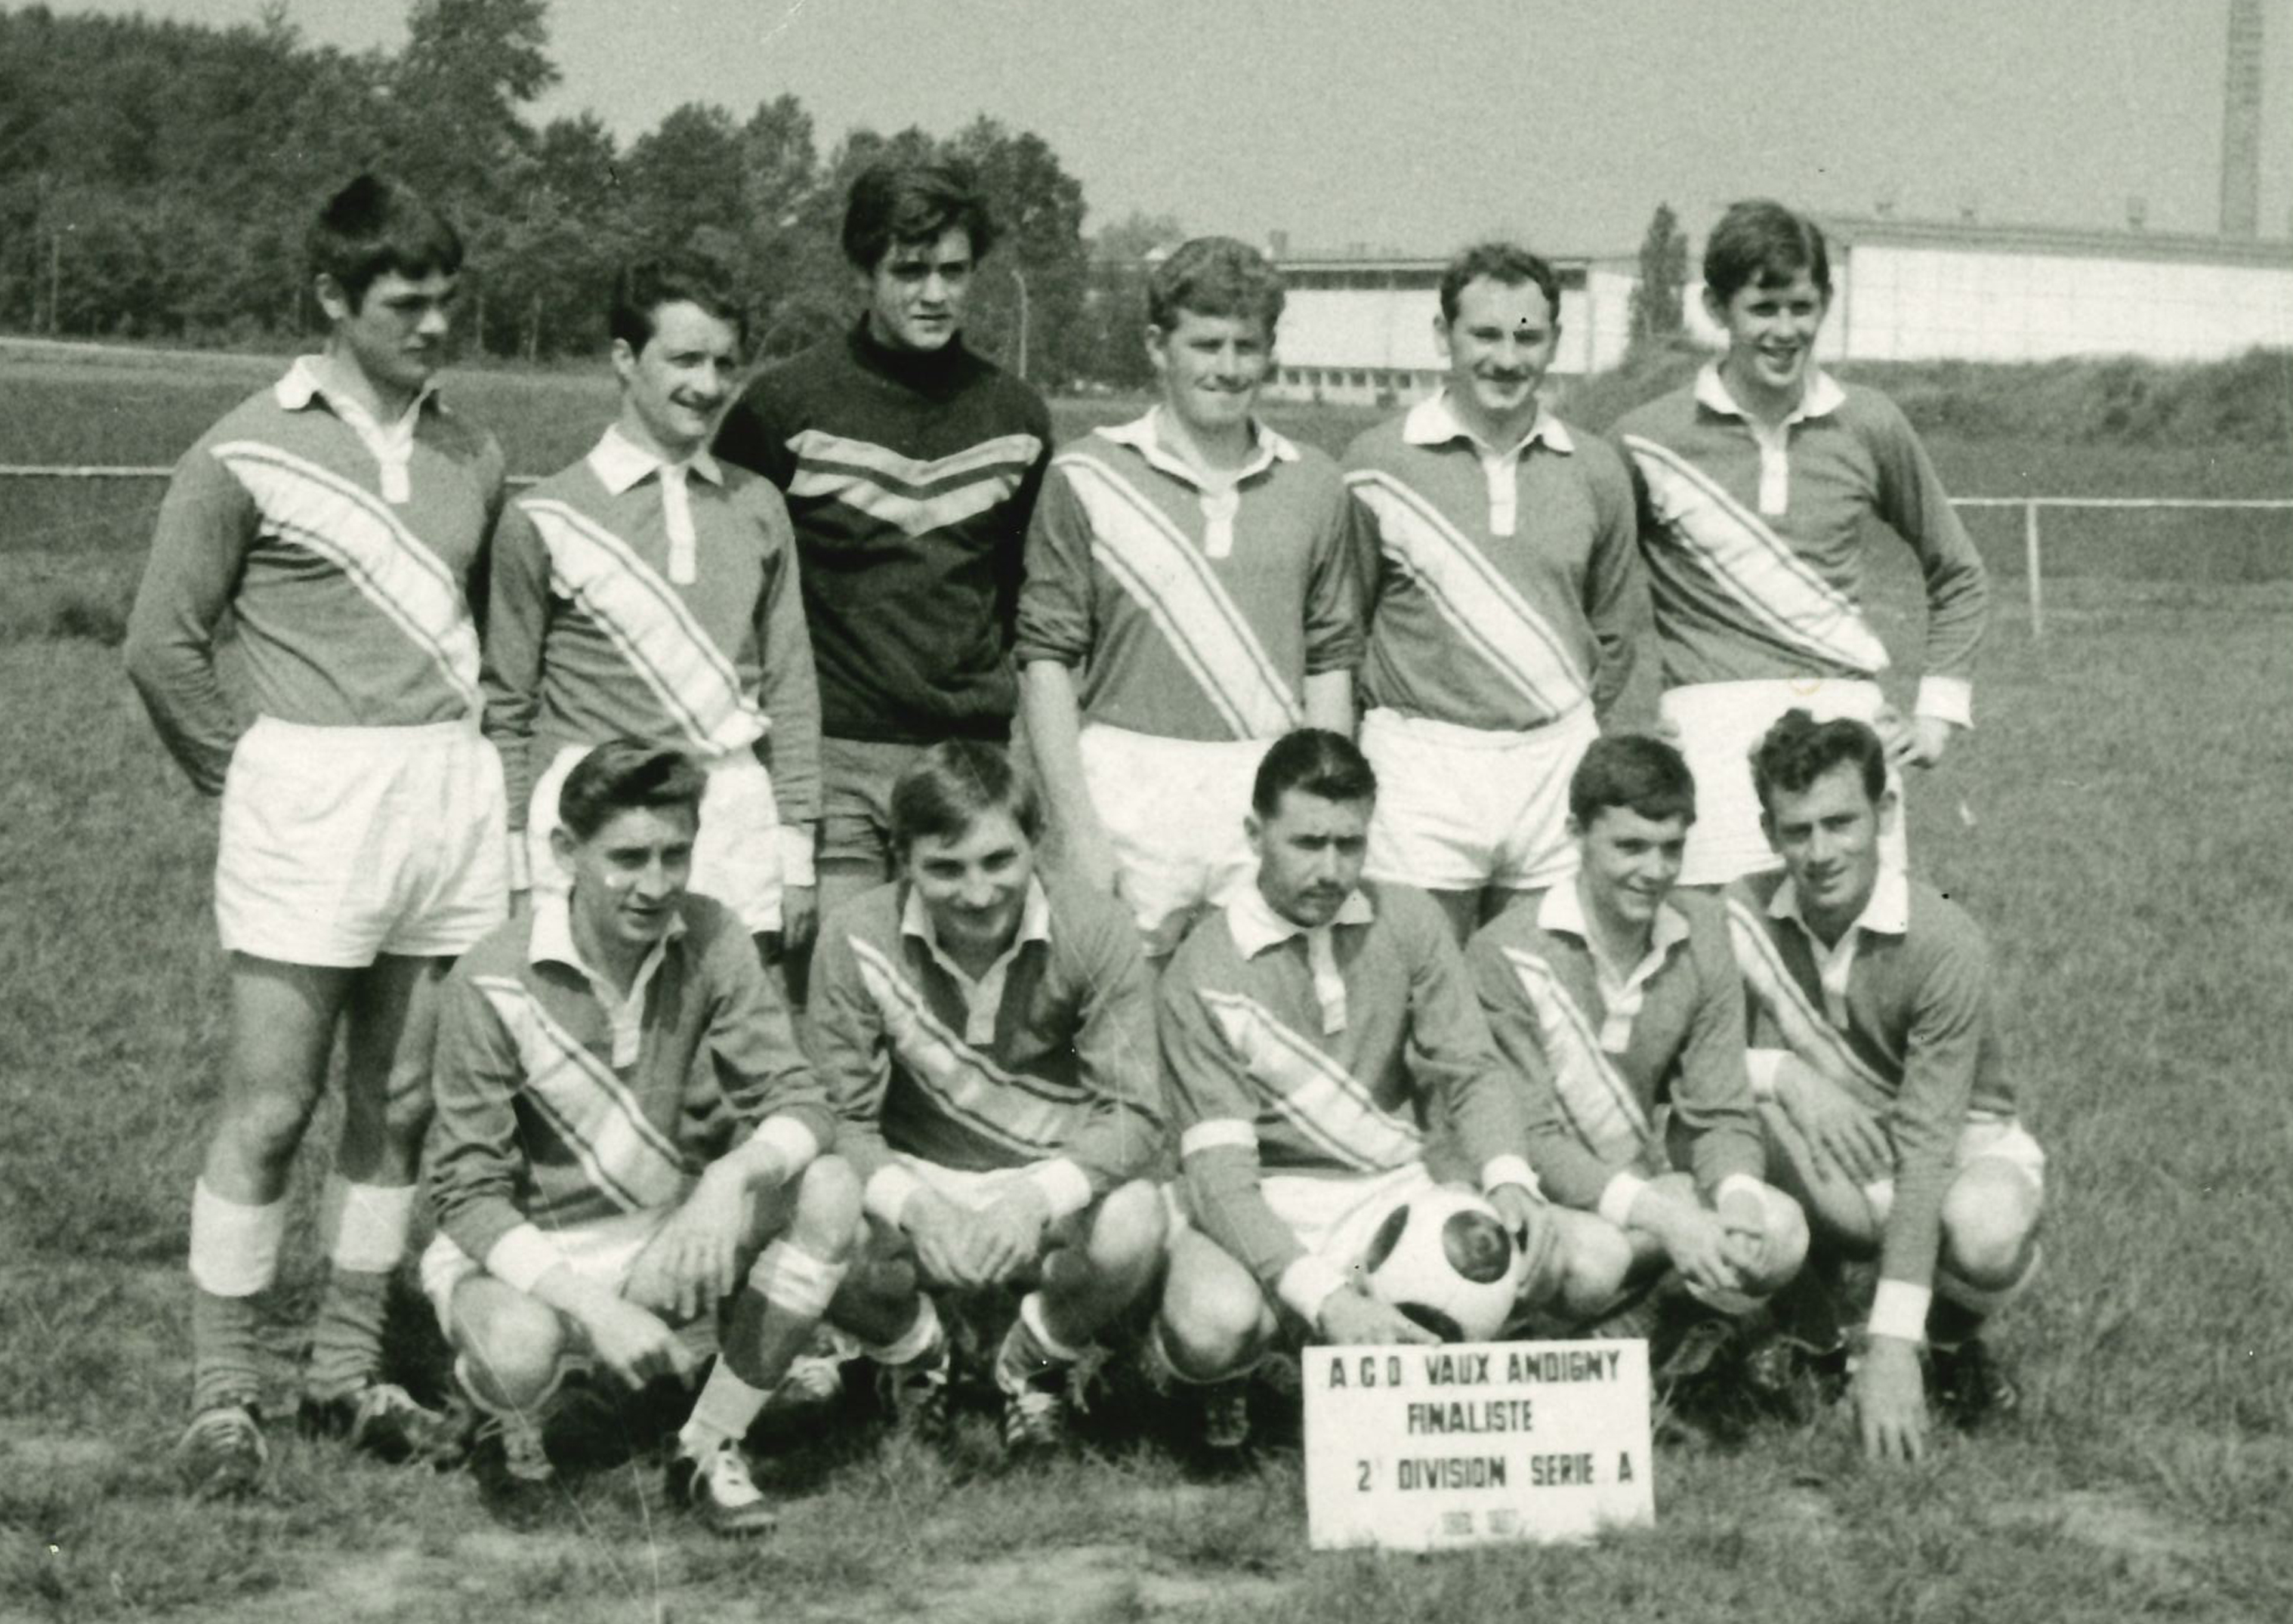 Notre équipe de foot A.C.O Vaux Andigny Finaliste de leur division en 1968